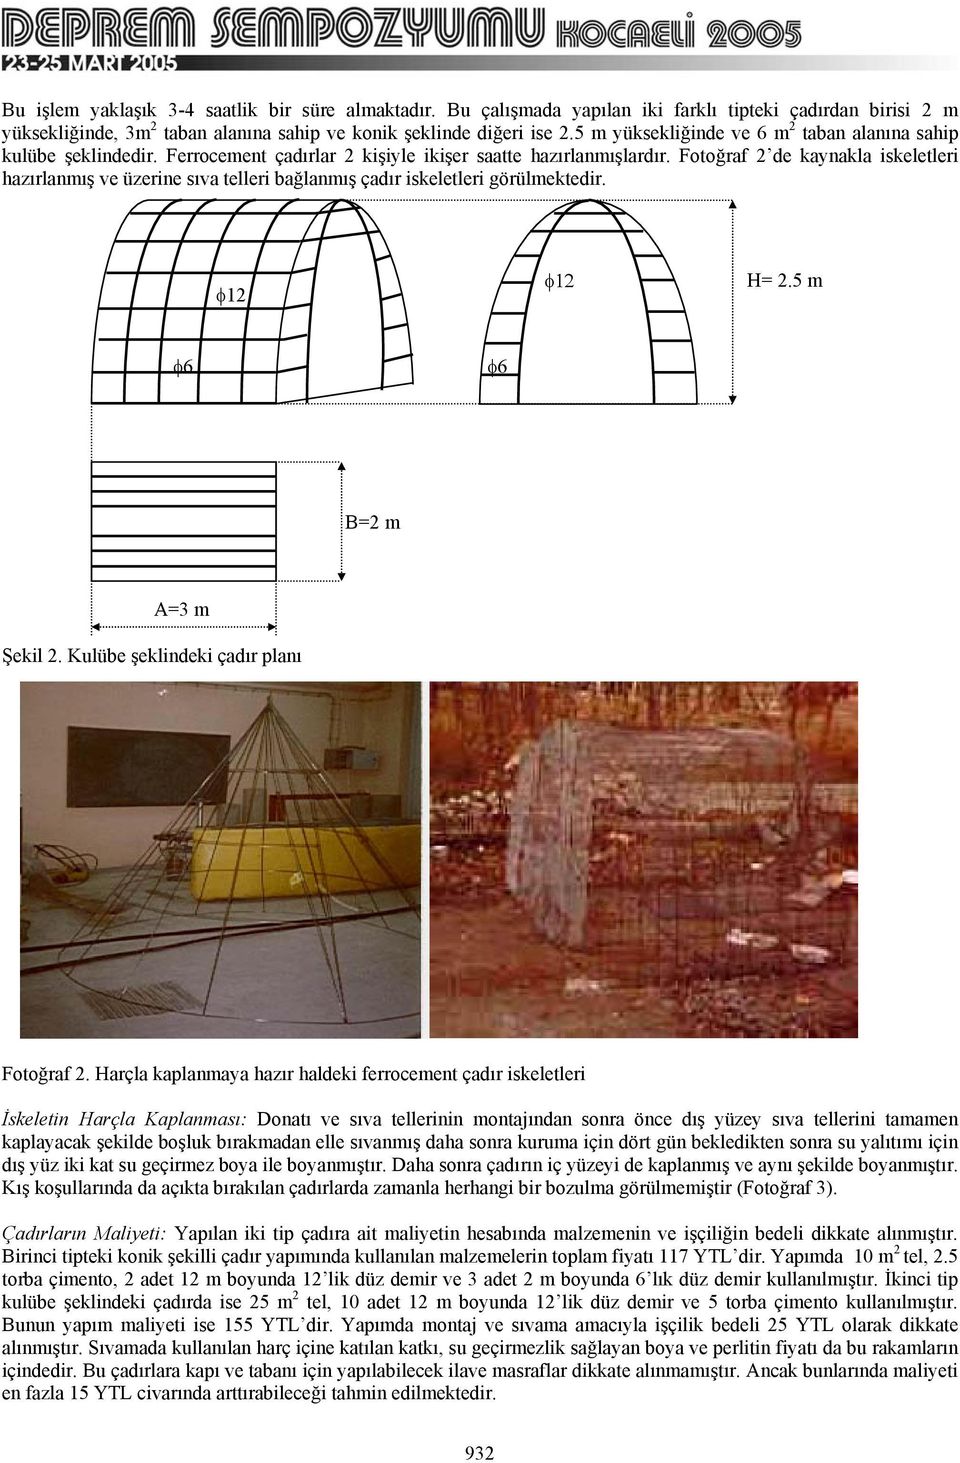 Fotoğraf 2 de kaynakla iskeletleri hazırlanmış ve üzerine sıva telleri bağlanmış çadır iskeletleri görülmektedir. φ12 φ12 H= 2.5 m φ6 φ6 B=2 m A=3 m Şekil 2. Kulübe şeklindeki çadır planı Fotoğraf 2.